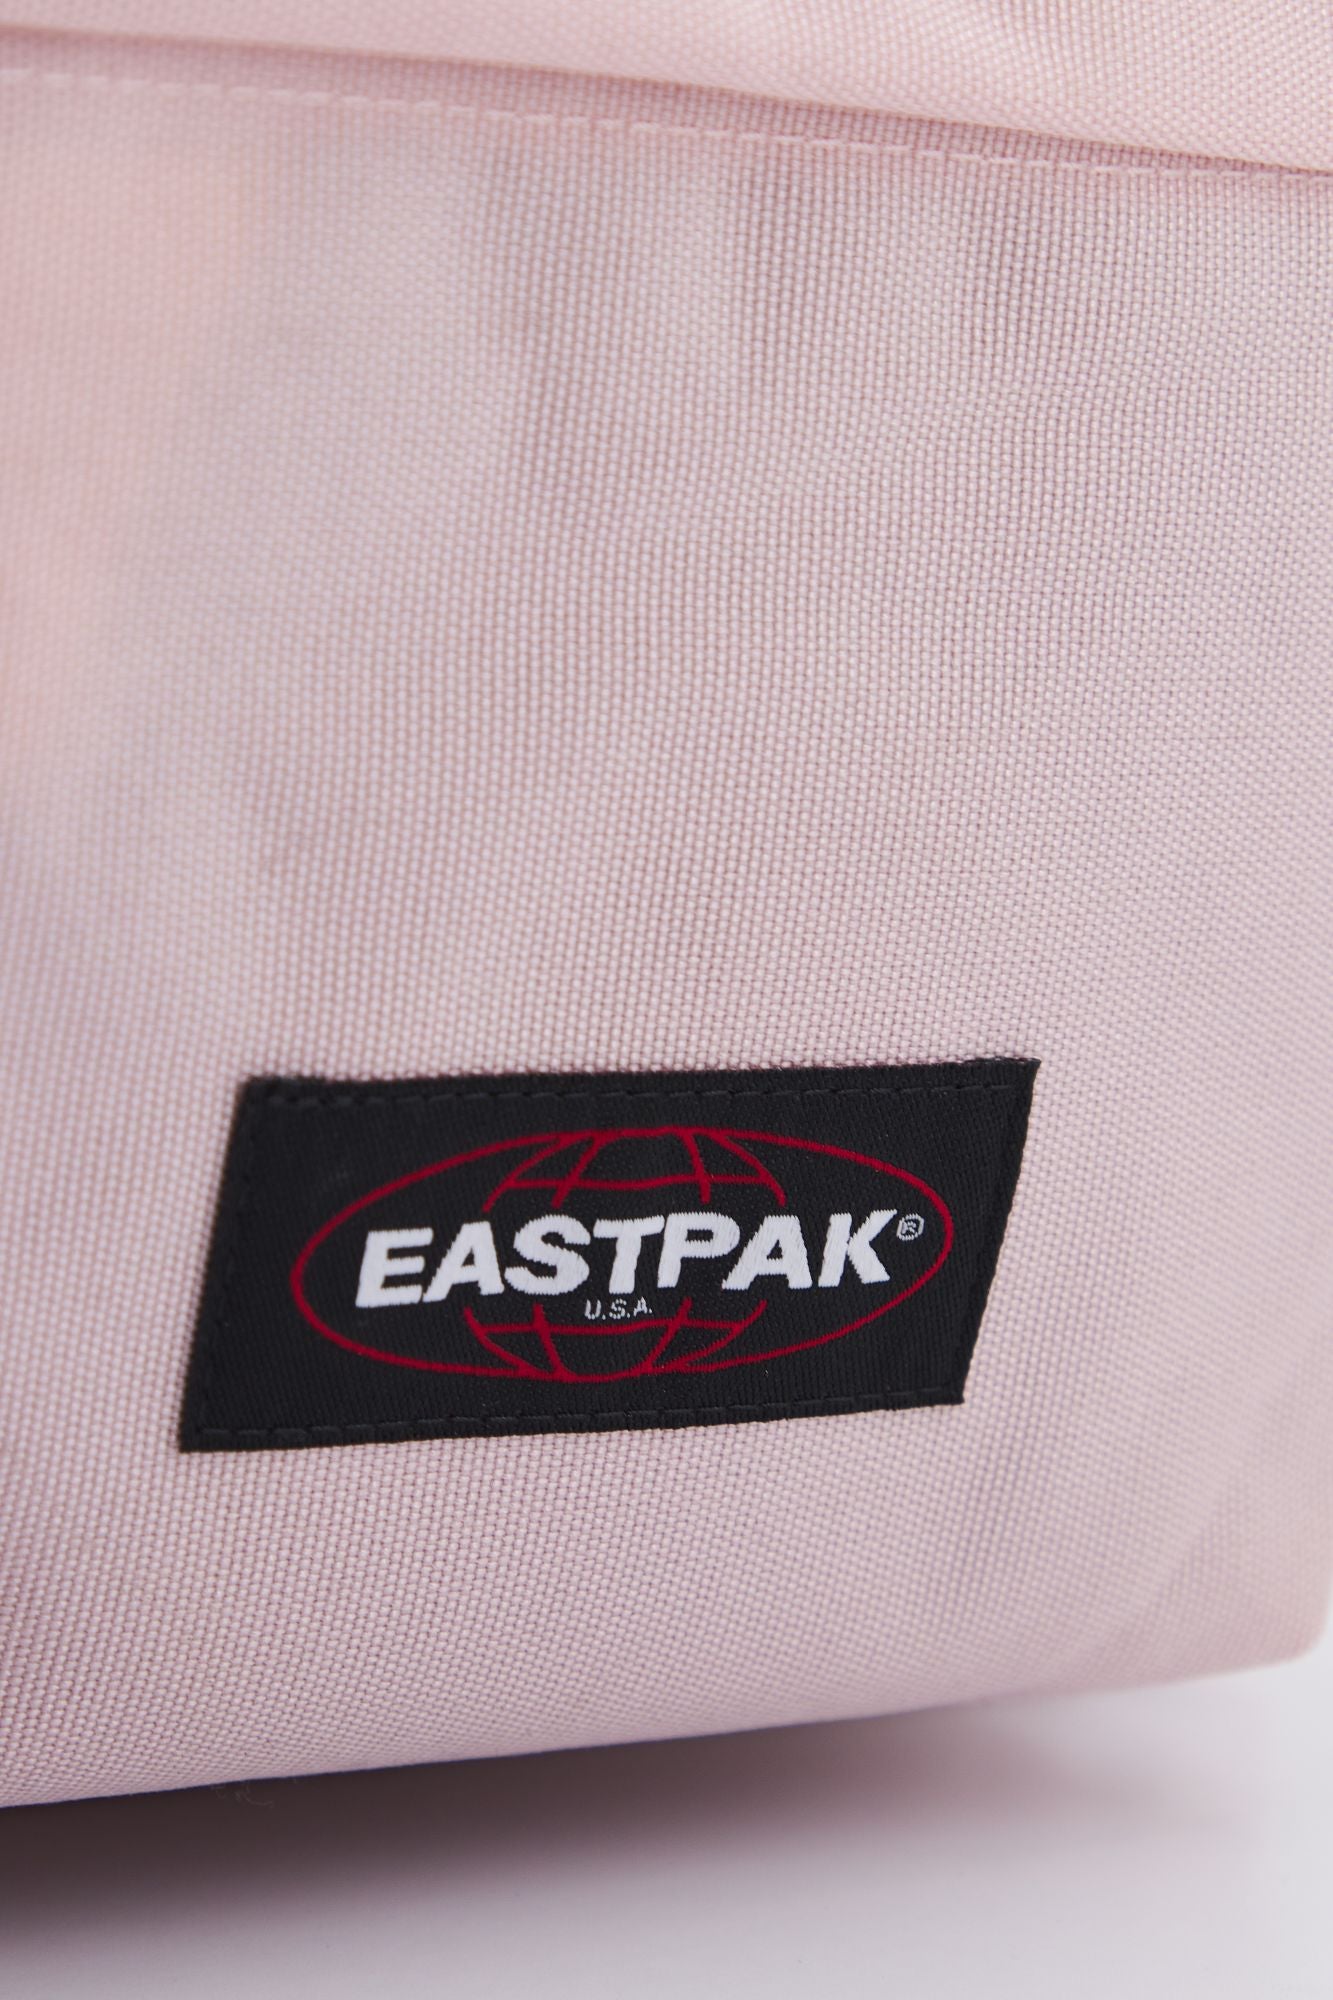 EASTPAK  PADDED PAK'R en color ROSA (4)